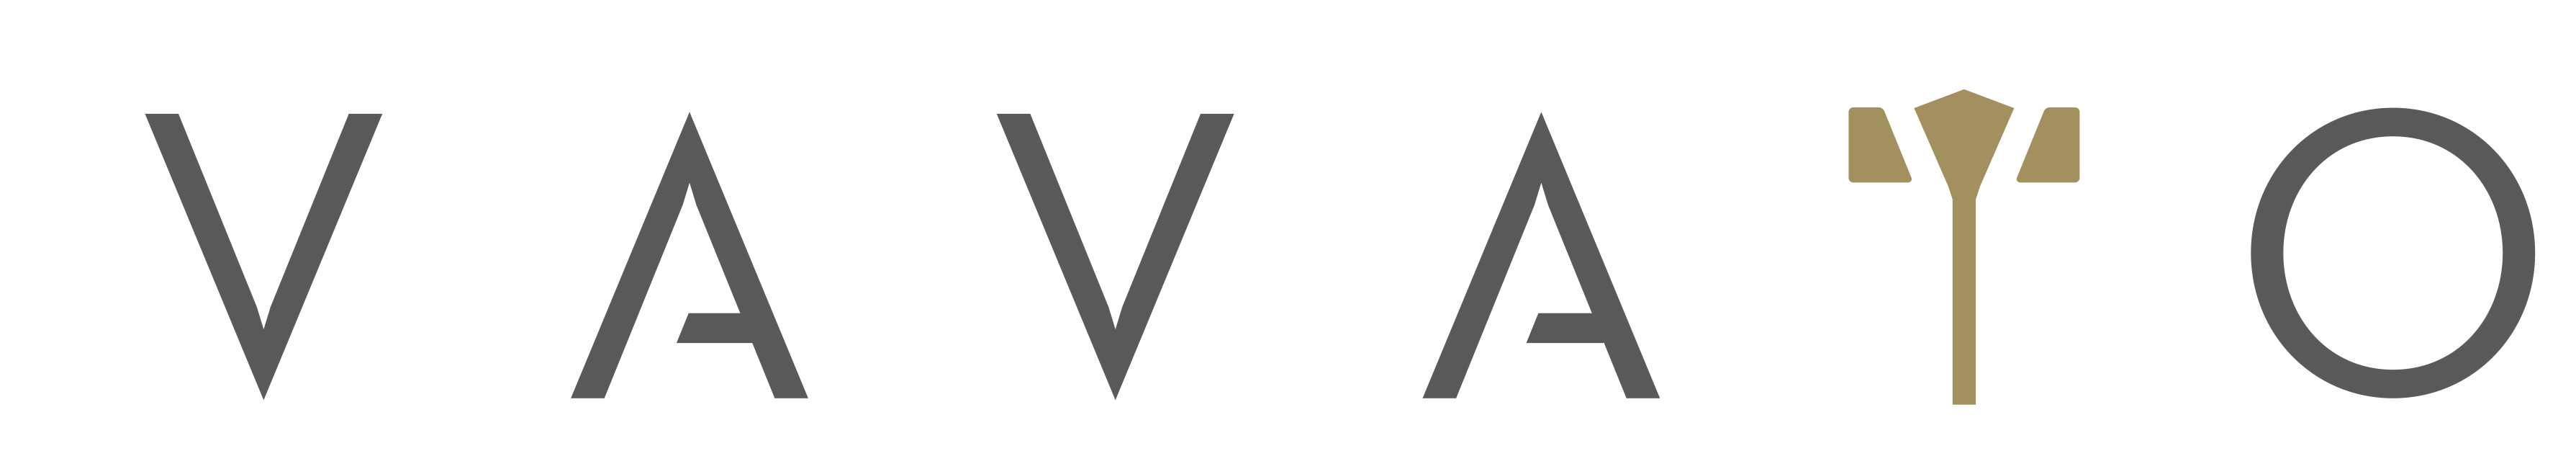 VAVATO logo